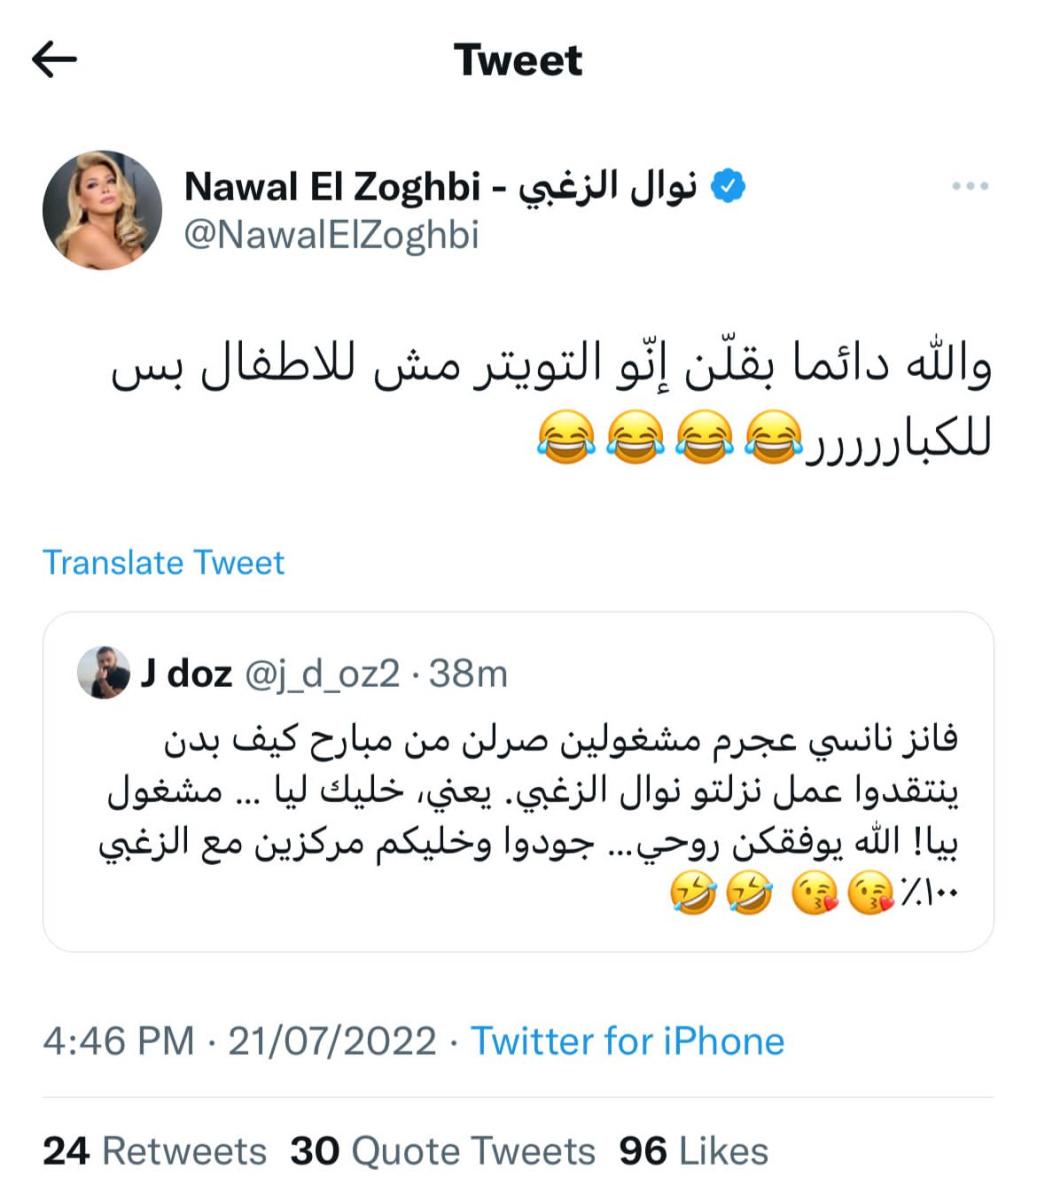 حروب افتراضية تدور في تويتر بين فانز نوال الزغبي و نانسي عجرم | ET بالعربي